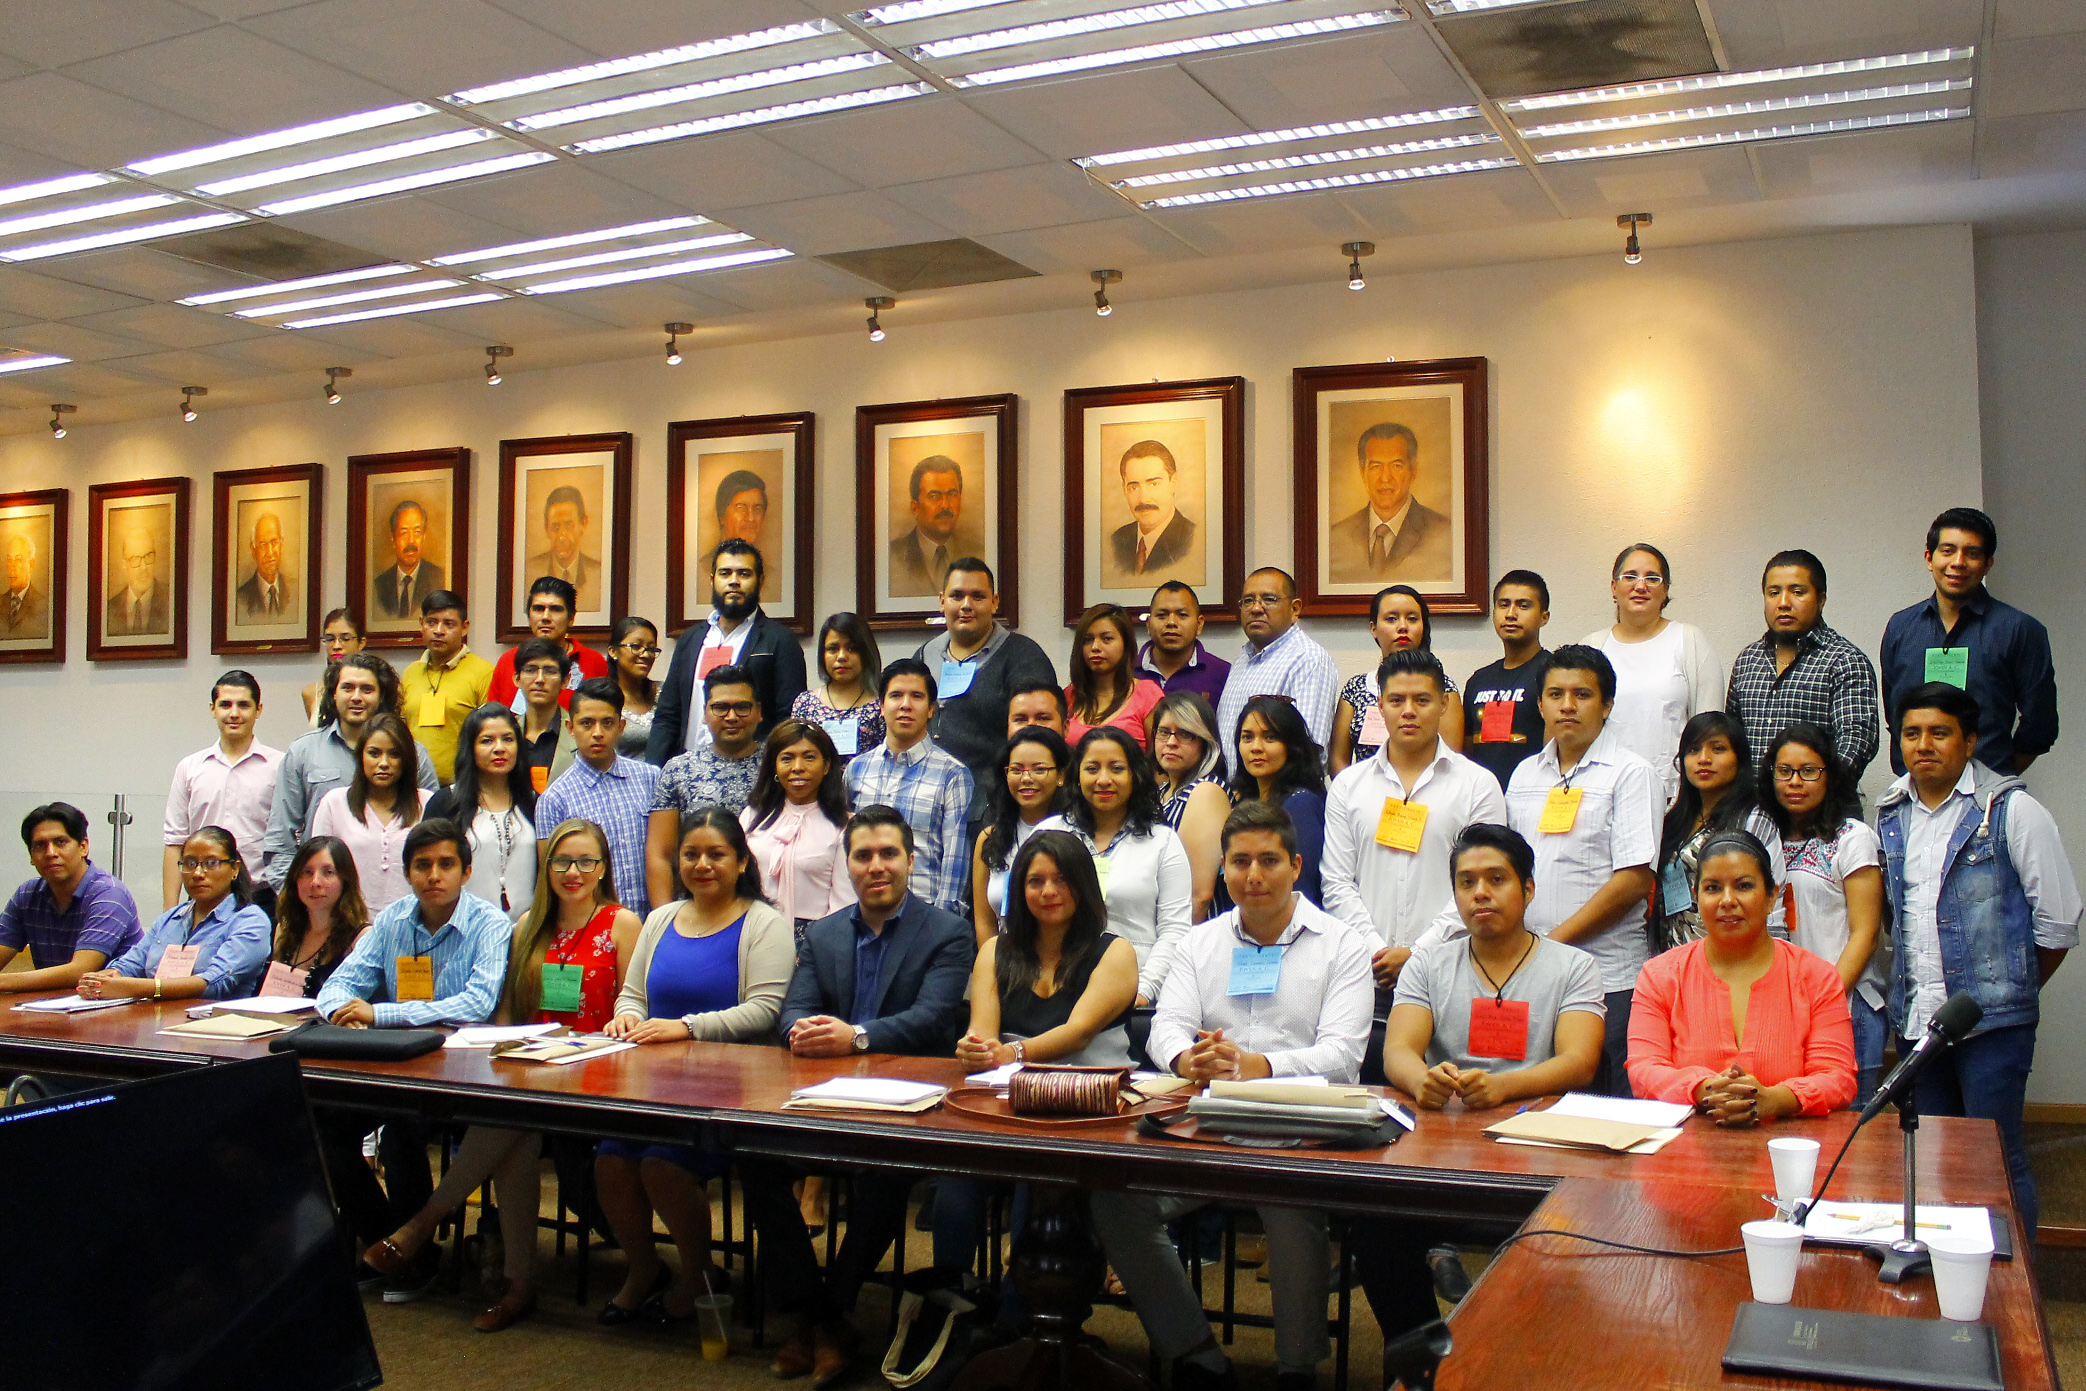 En el estado de Morelos se registraron 90 jóvenes de entre 12 a 29 años de edad que participan en 45 Organizaciones de la Sociedad Civil (OSC).